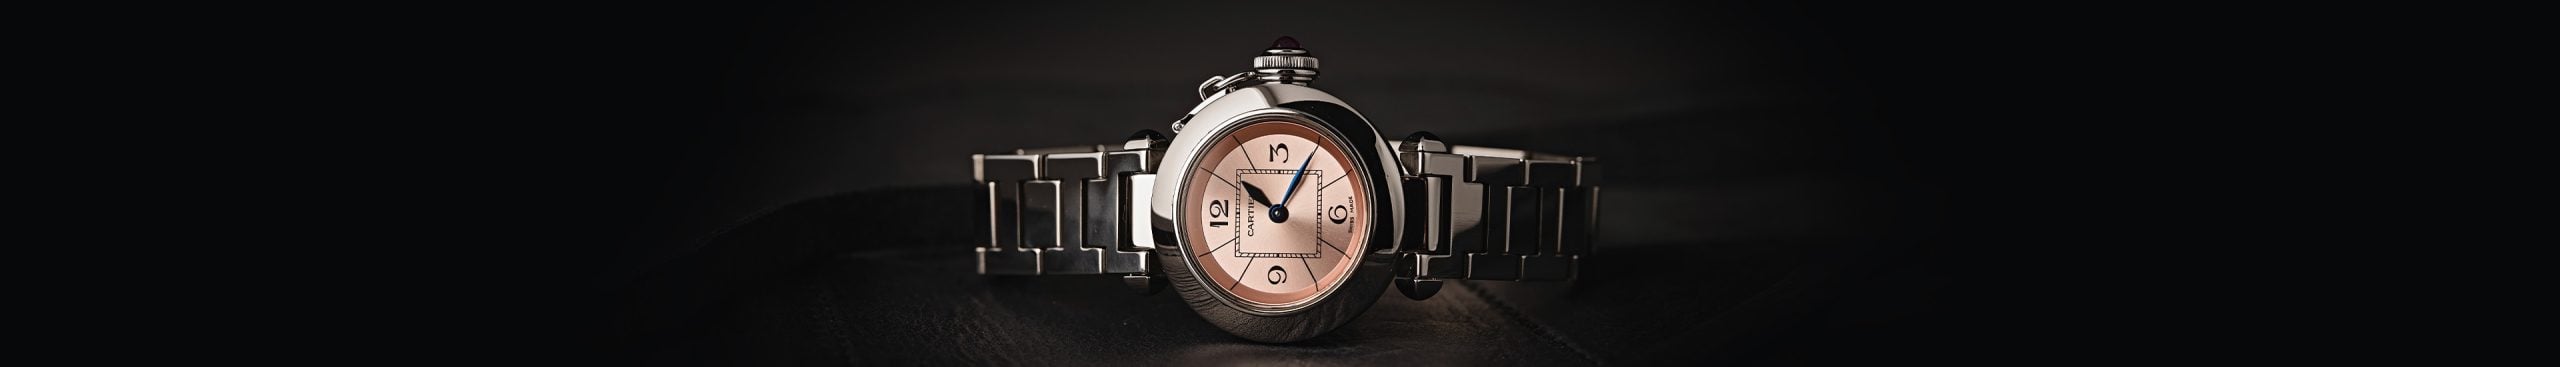 Buy Kenneth Scott Watches Dubai , Online Watches UAE | Buy Kenneth Scott  Watch